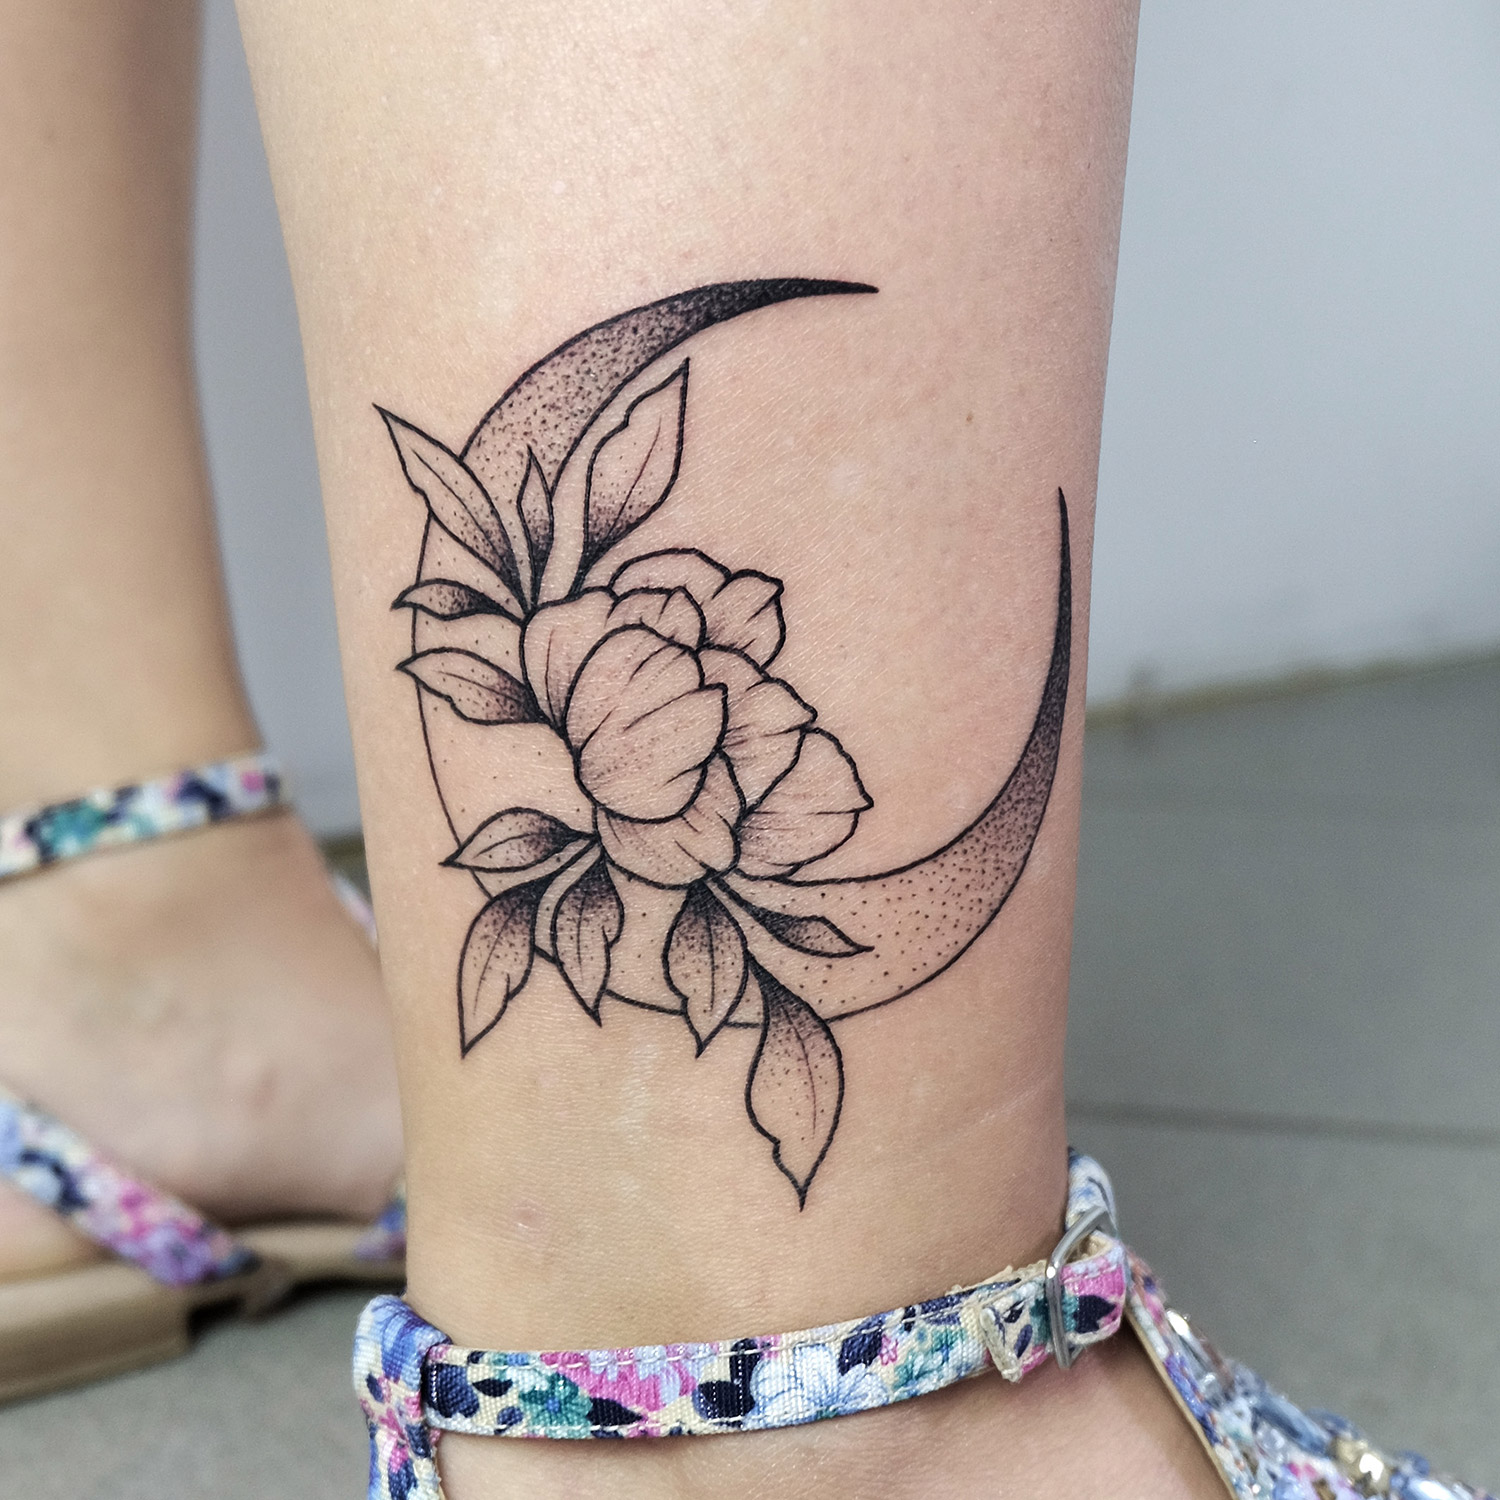 Hình Xăm Đẹp - tattoos ở chân cho nữ cực đẹp | Facebook